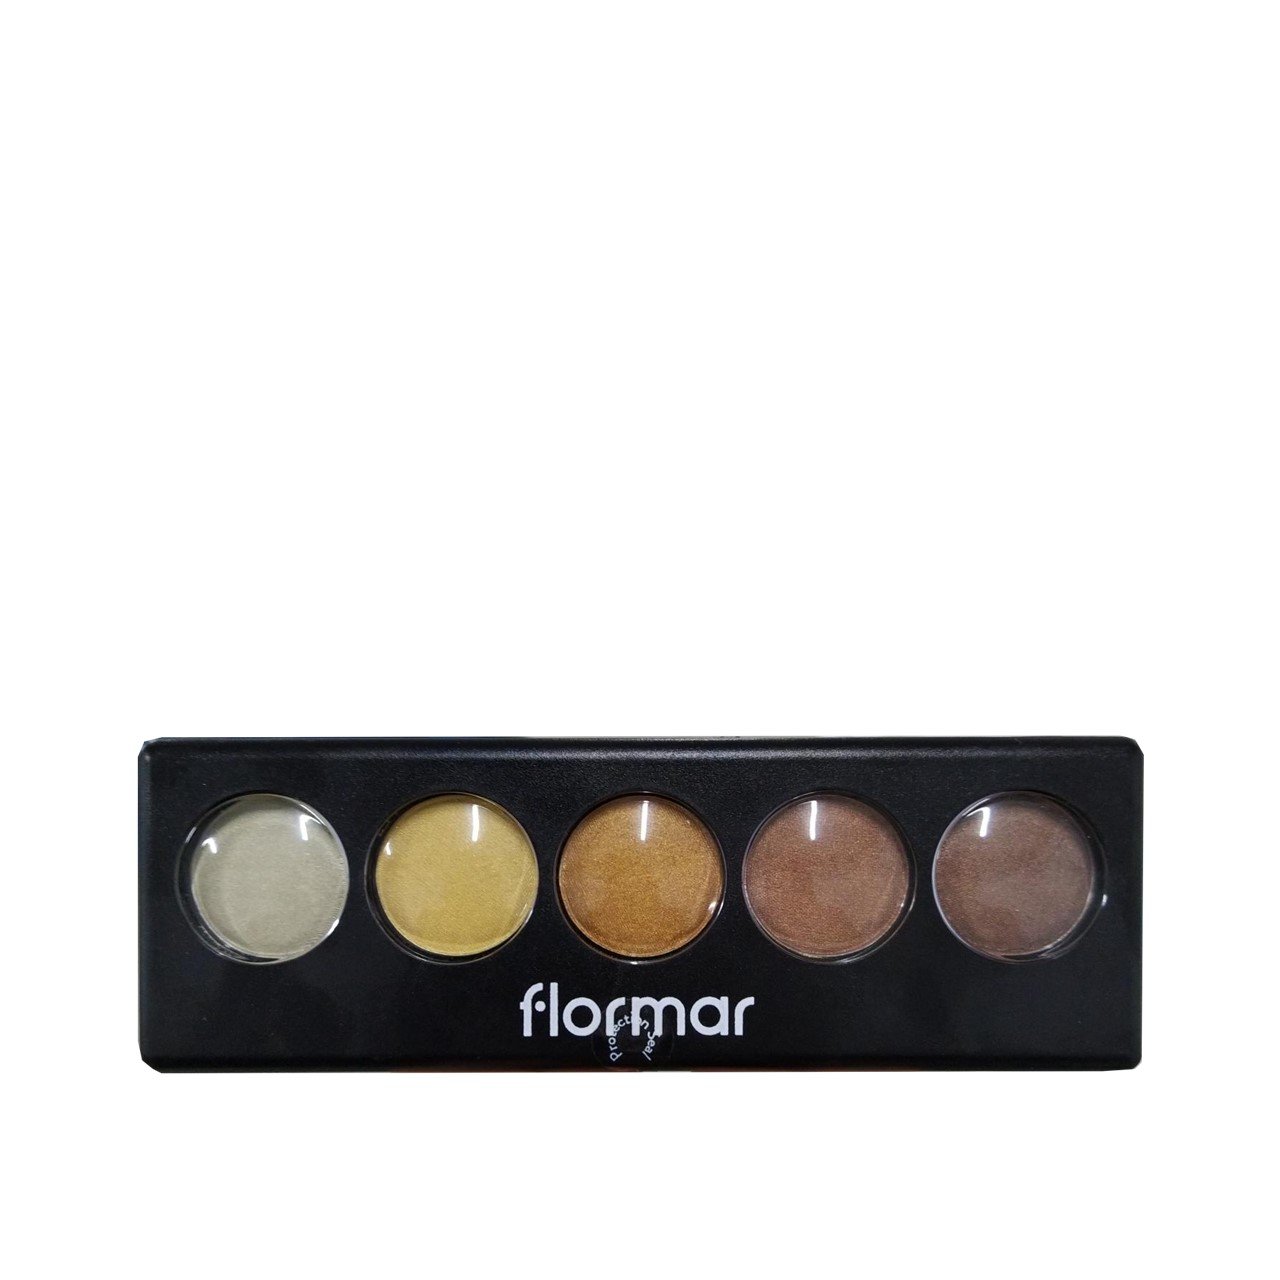 Flormar Color Palette Eyeshadow 04 Golden Caramel 9g (0.32oz)